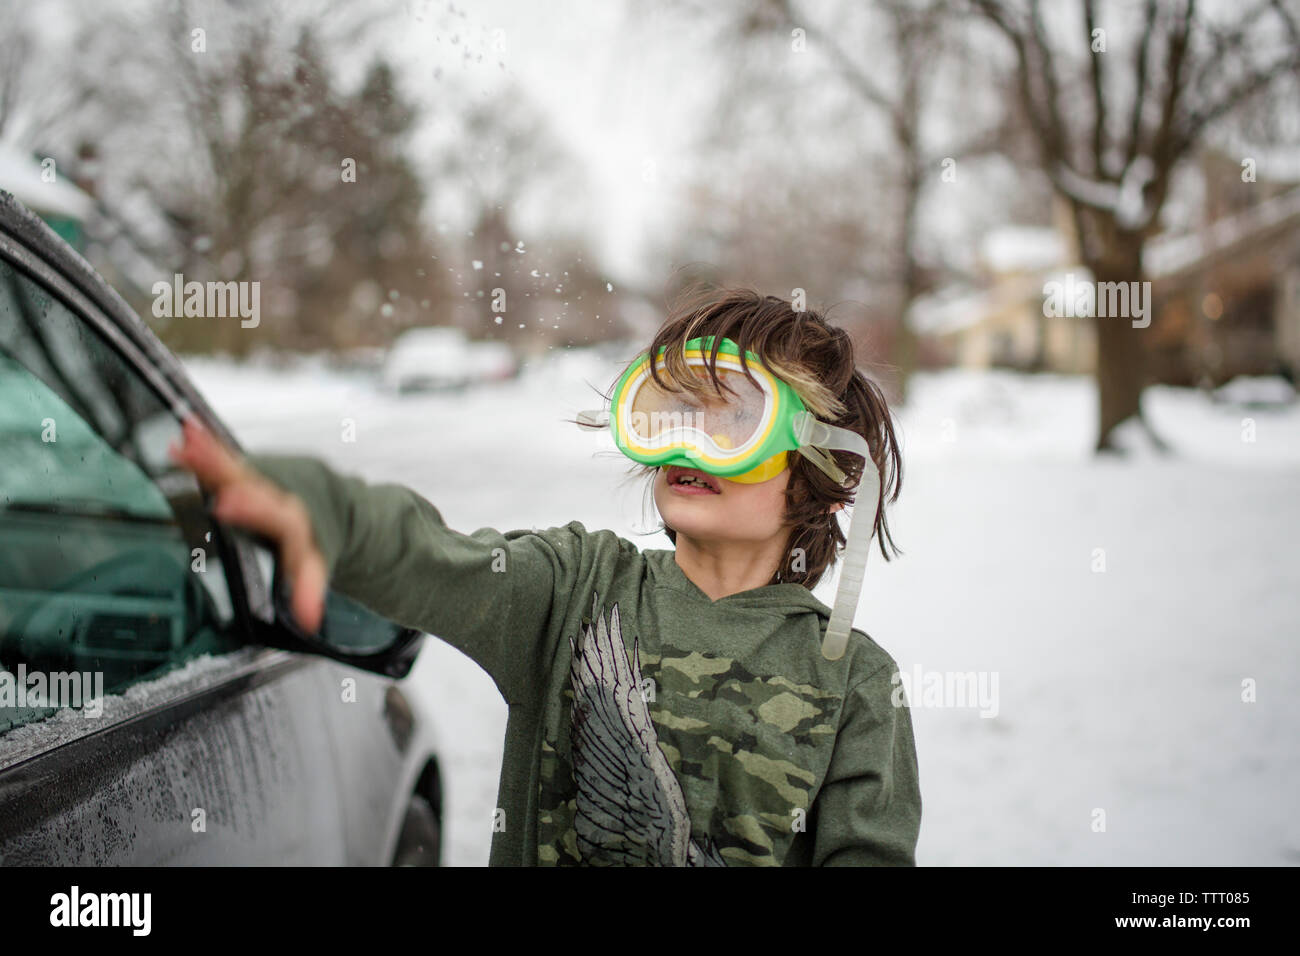 Un bambino piccolo che indossa una maschera snorkel gioca nella neve su una giornata invernale Foto Stock